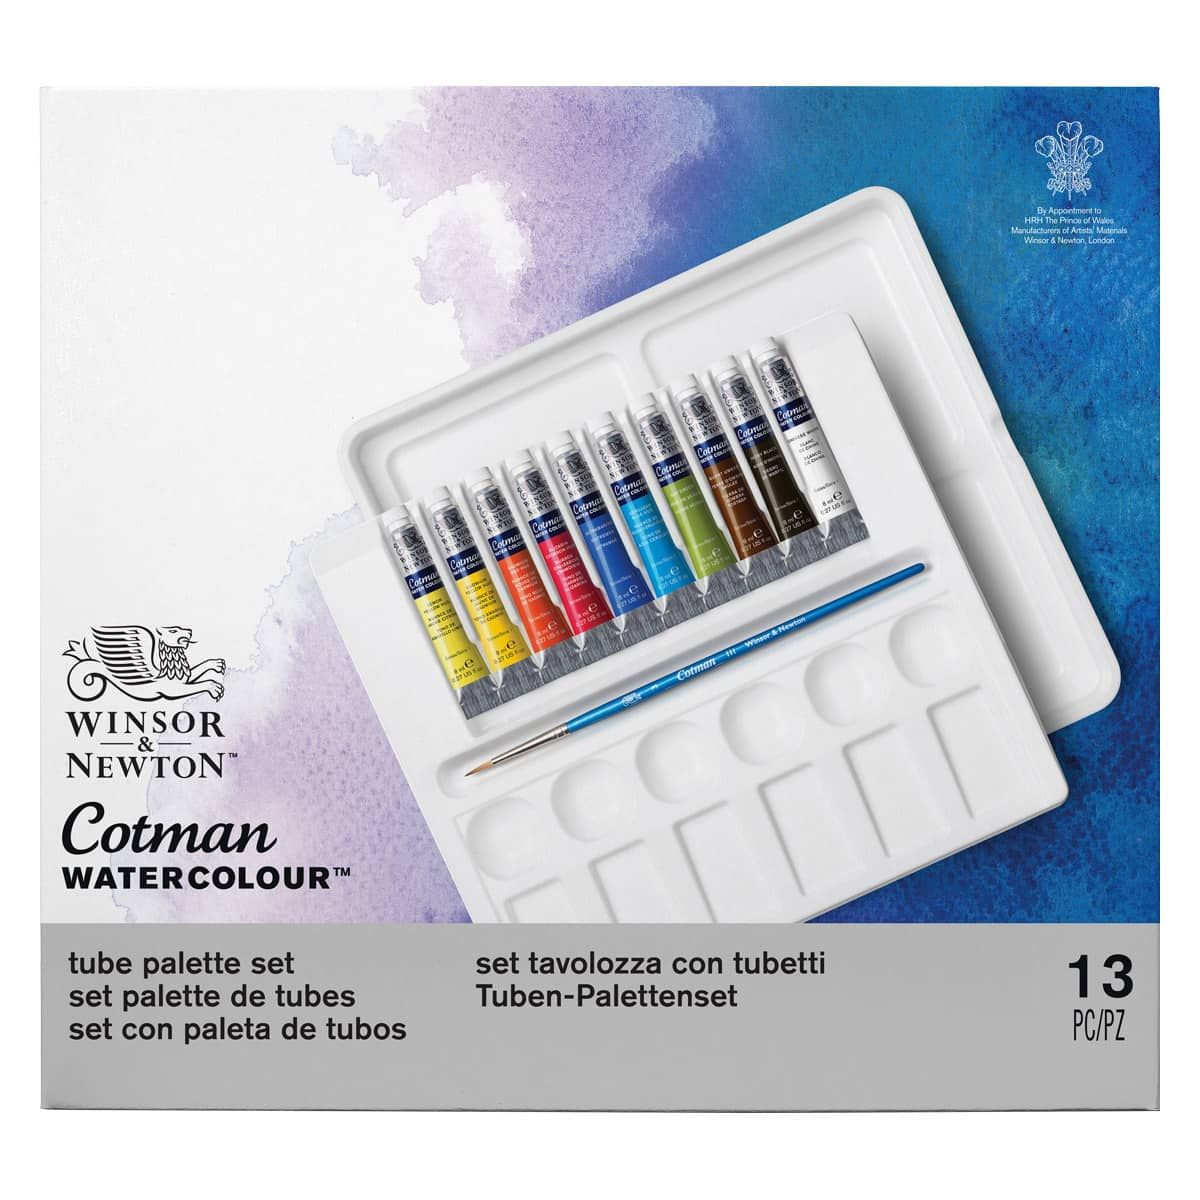 Winsor & Newton Cotman Watercolor - Palette Set of 10, 8ml Tubes